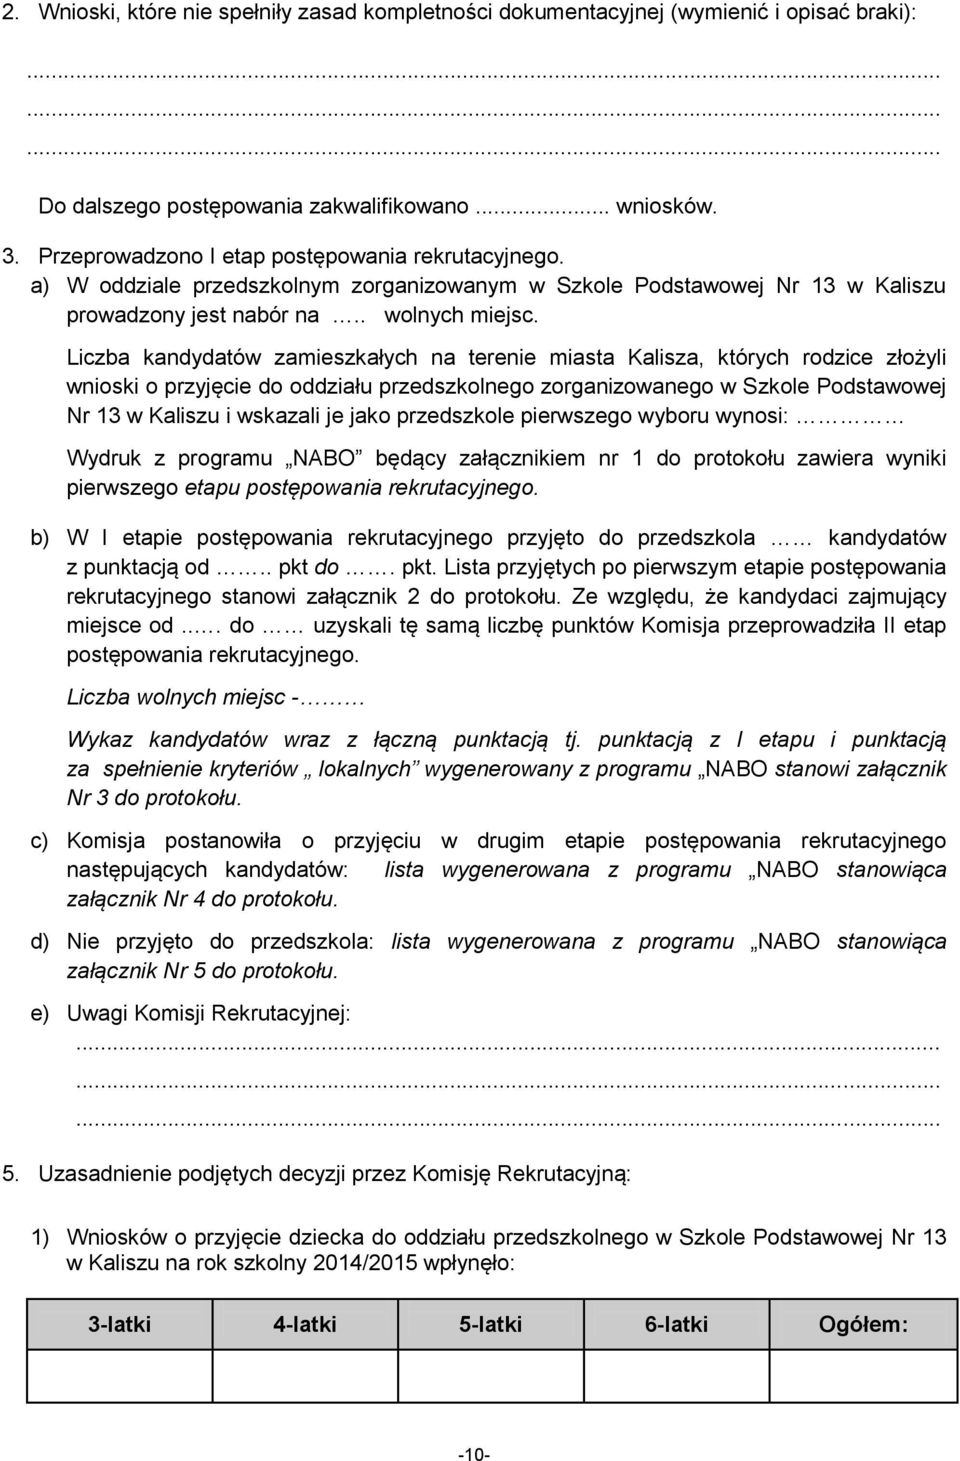 Liczba kandydatów zamieszkałych na terenie miasta Kalisza, których rodzice złożyli wnioski o przyjęcie do oddziału przedszkolnego zorganizowanego w Szkole Podstawowej Nr 13 w Kaliszu i wskazali je